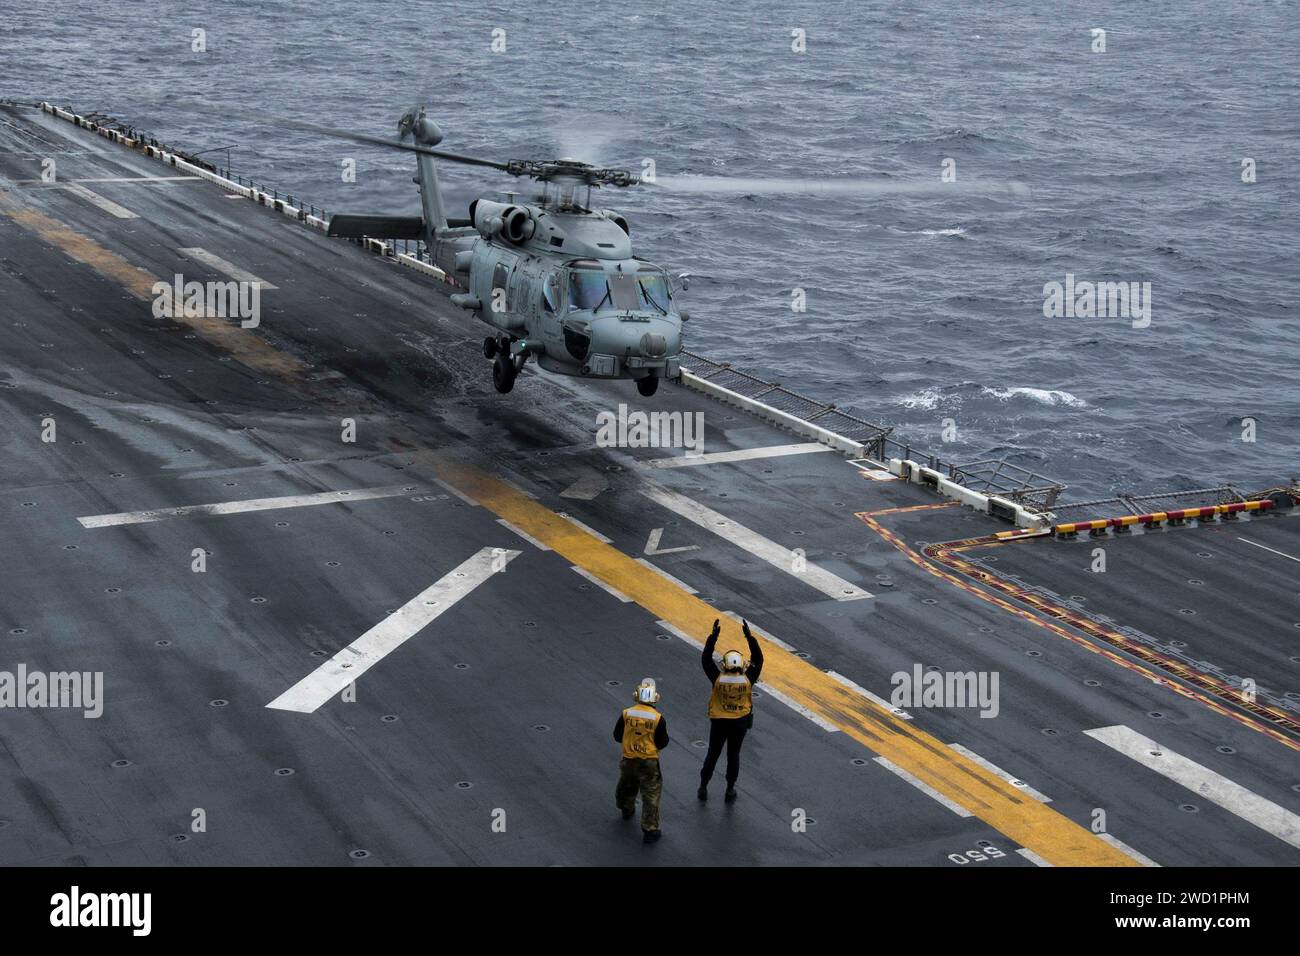 Ein MH-60R Sea Hawk Hubschrauber landet auf dem Flugdeck der USS Bonhomme Richard. Stockfoto